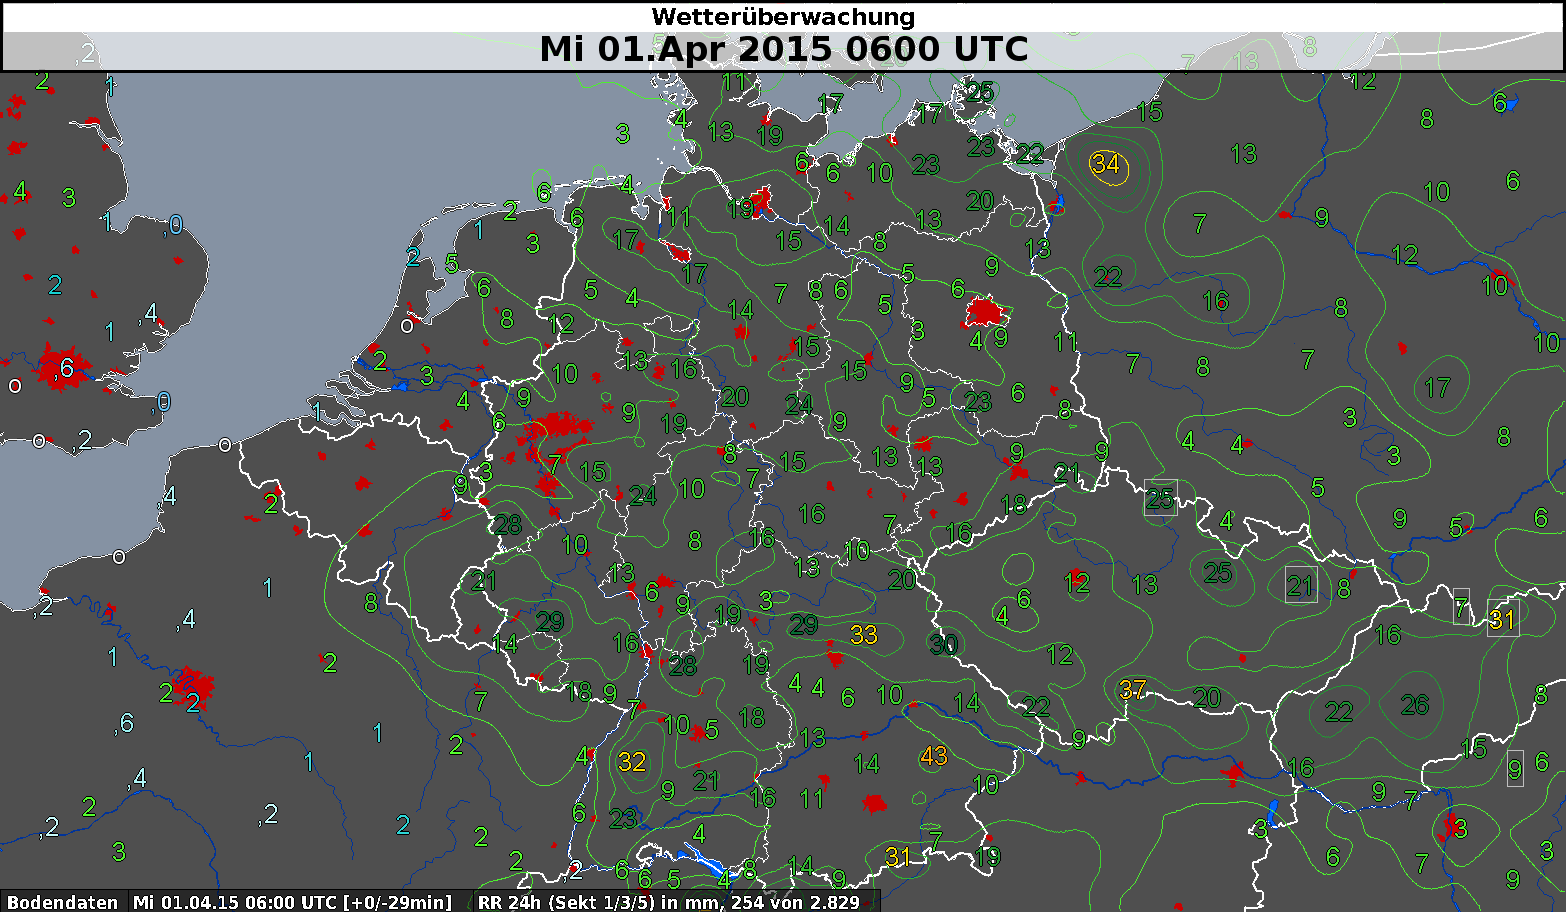 Niederschläge Schon am Wochenende des 28./29. März hatte es kräftige Niederschläge vor allem im Süden Deutschlands geben. Der 24-stündige Niederschlag vom 29./30.